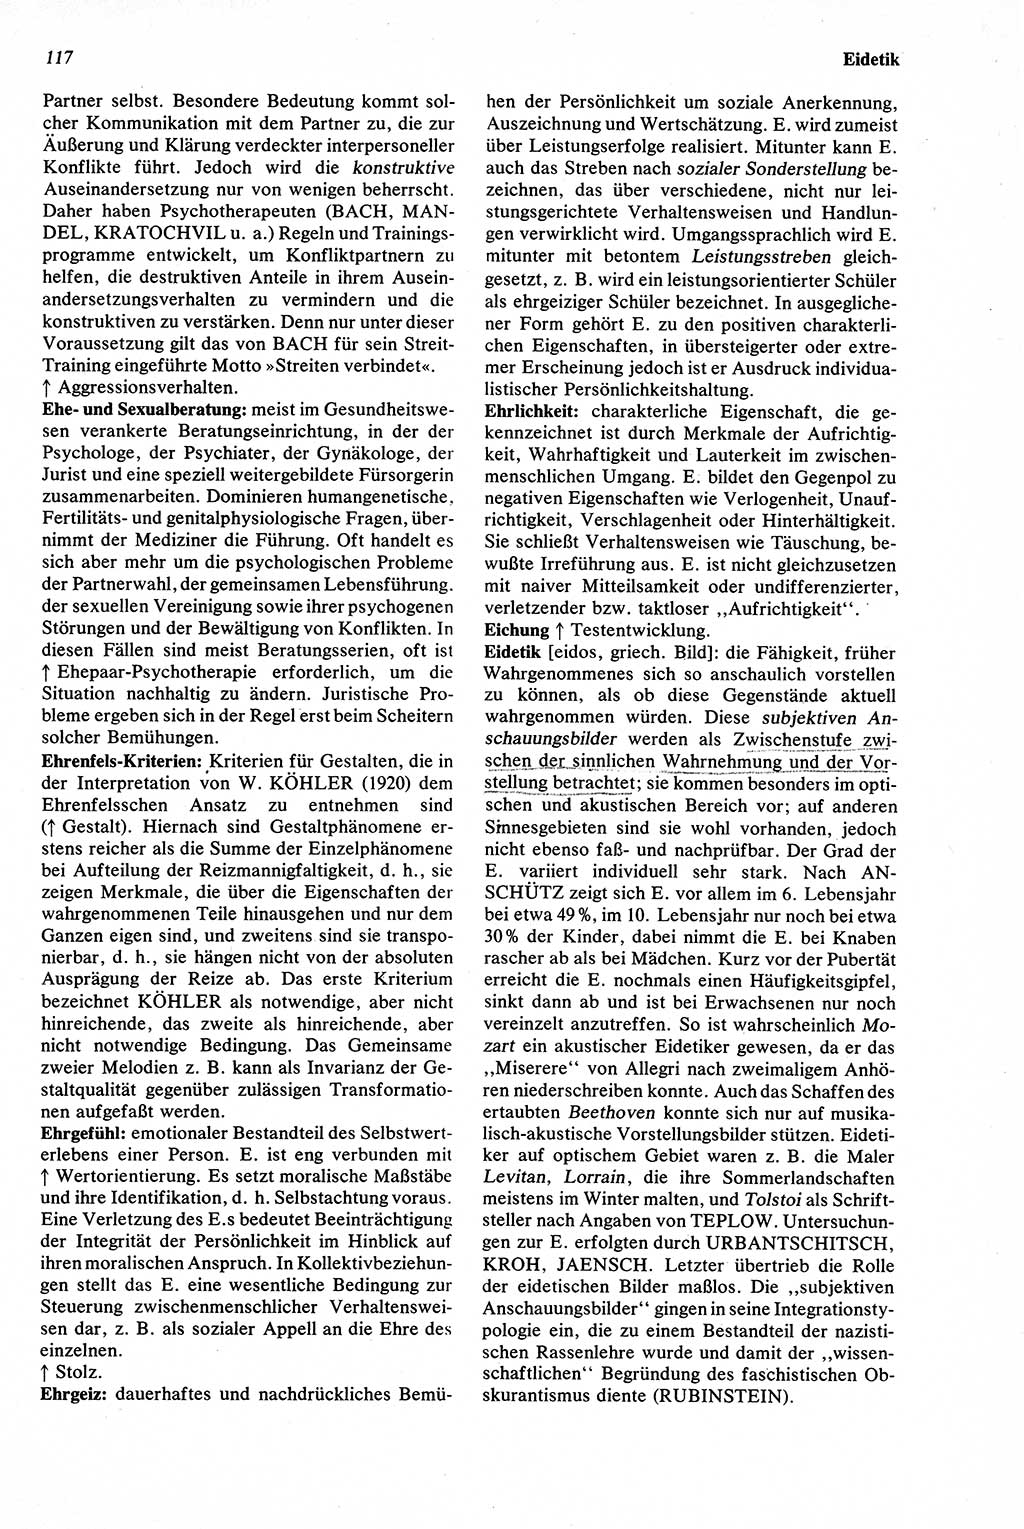 Wörterbuch der Psychologie [Deutsche Demokratische Republik (DDR)] 1976, Seite 117 (Wb. Psych. DDR 1976, S. 117)